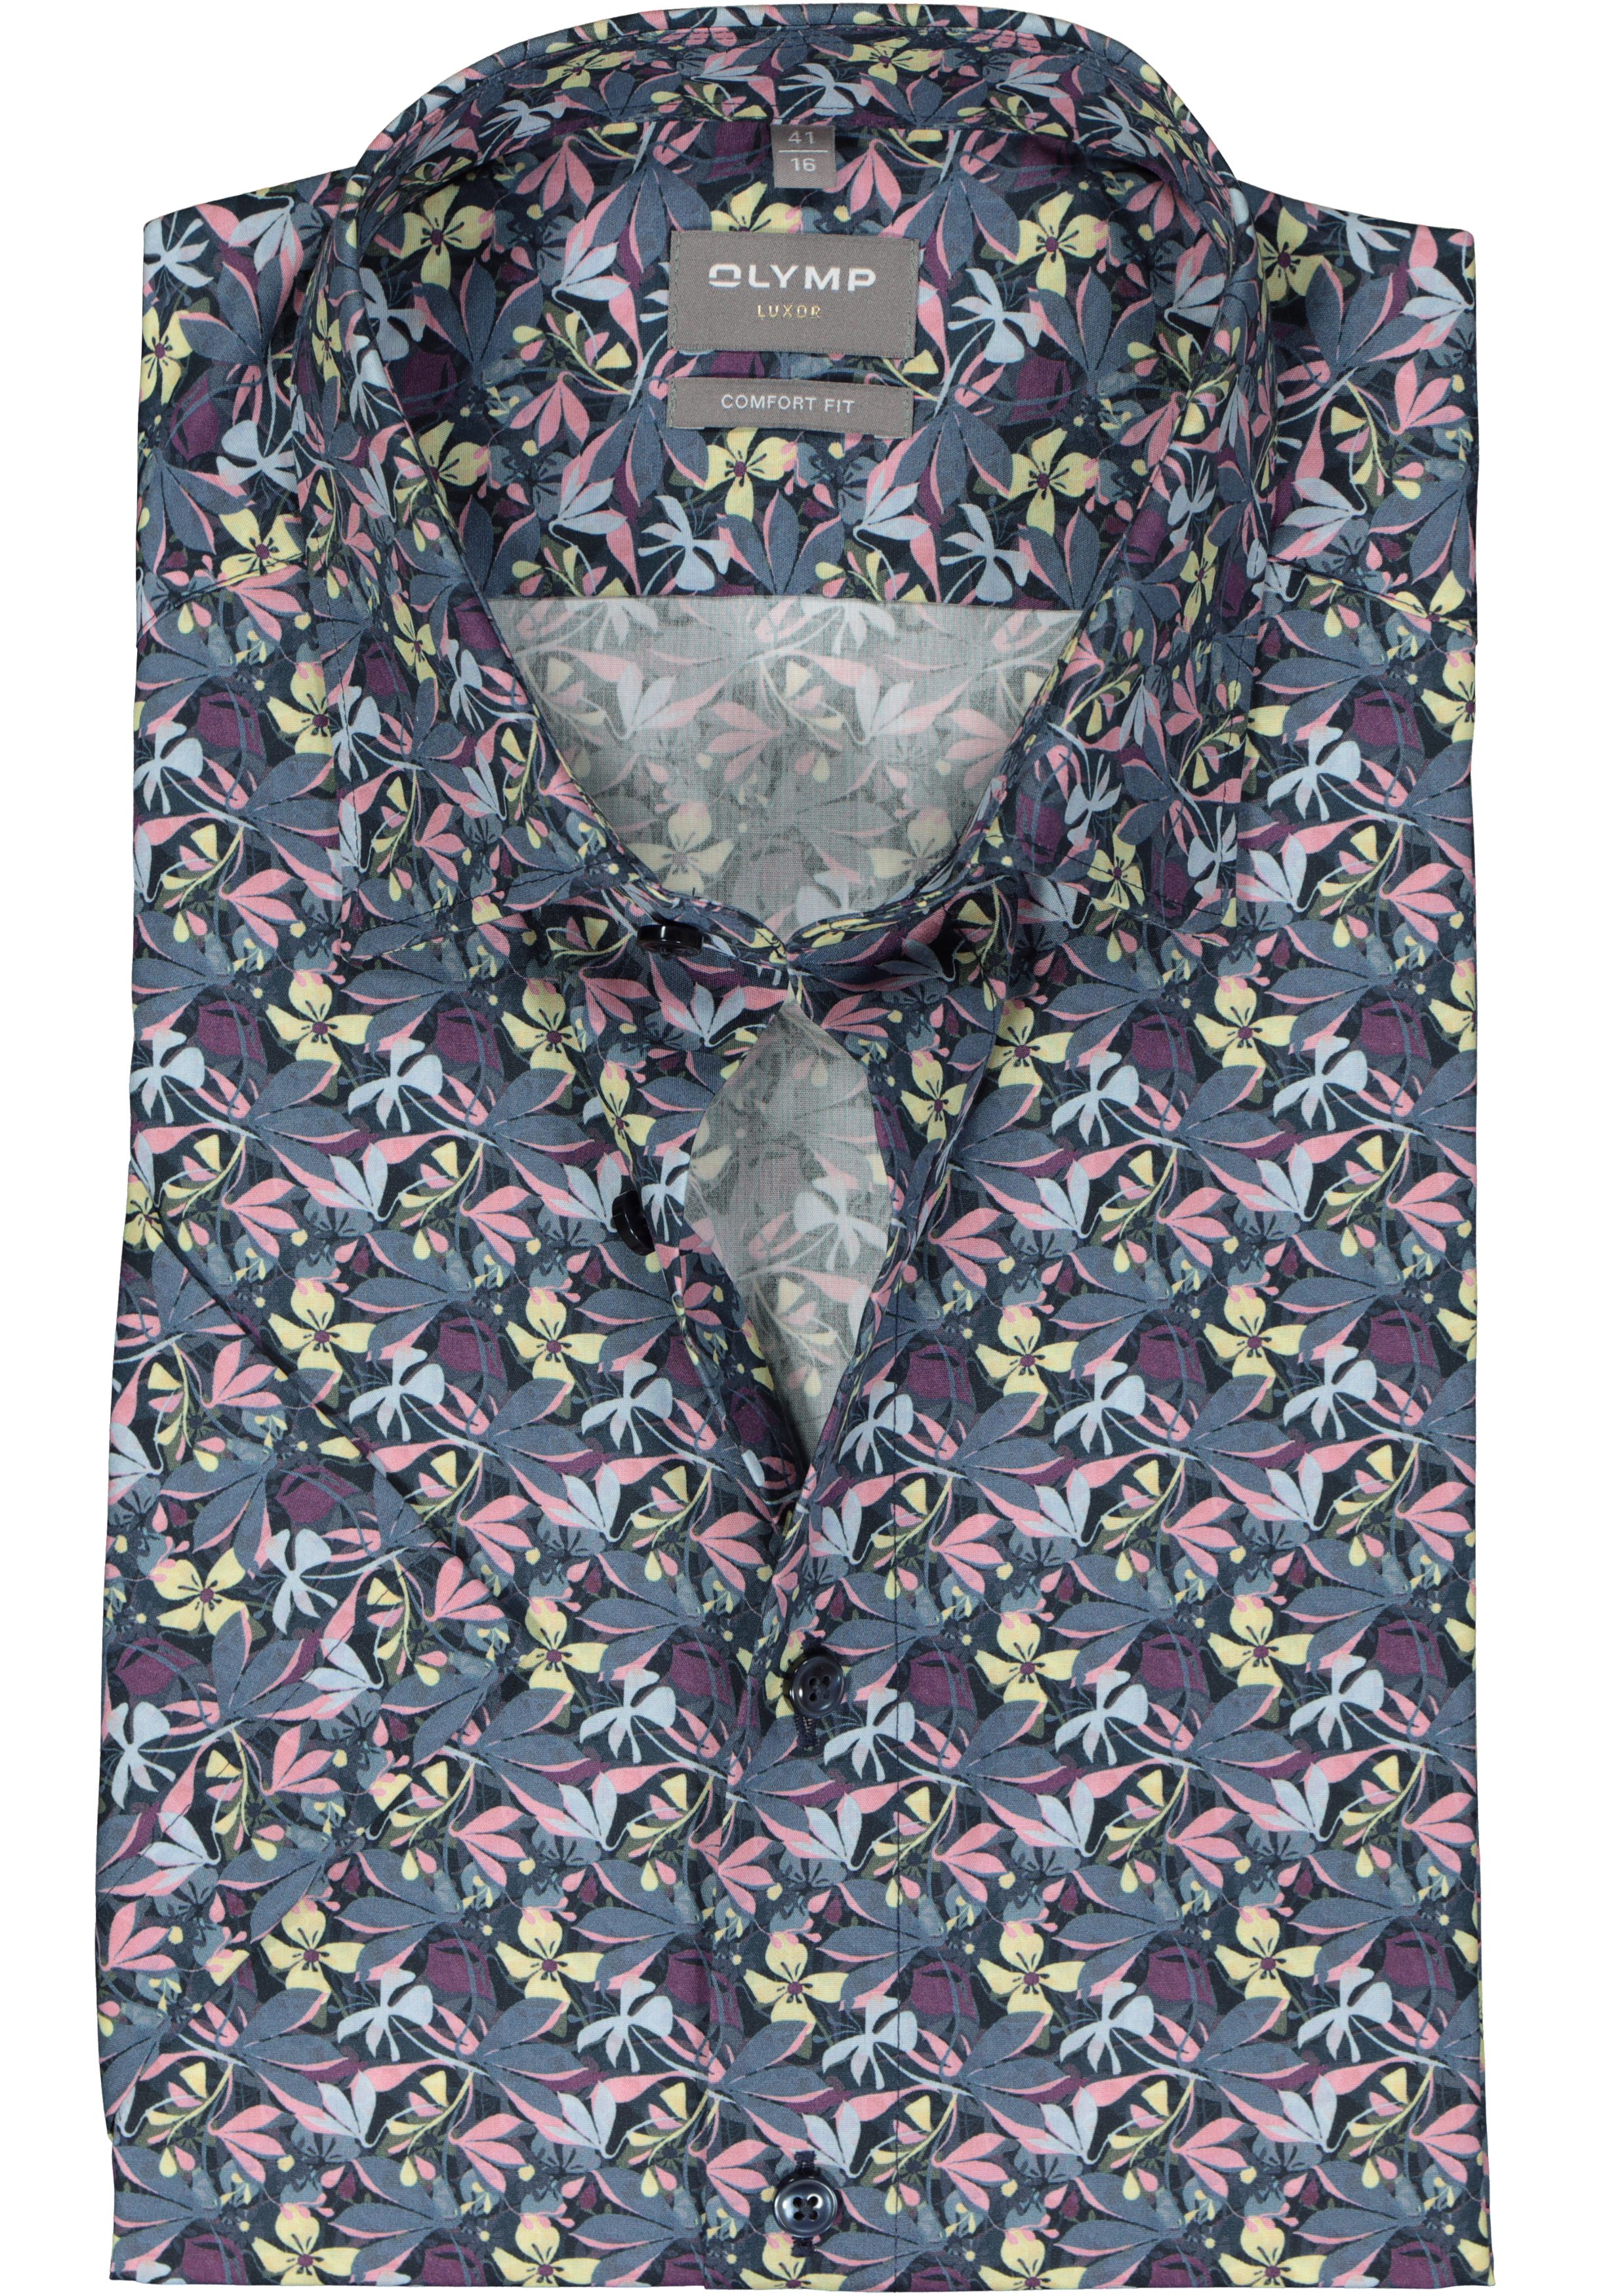 OLYMP comfort fit overhemd, korte mouw, popeline, grijs met geel en roze dessin